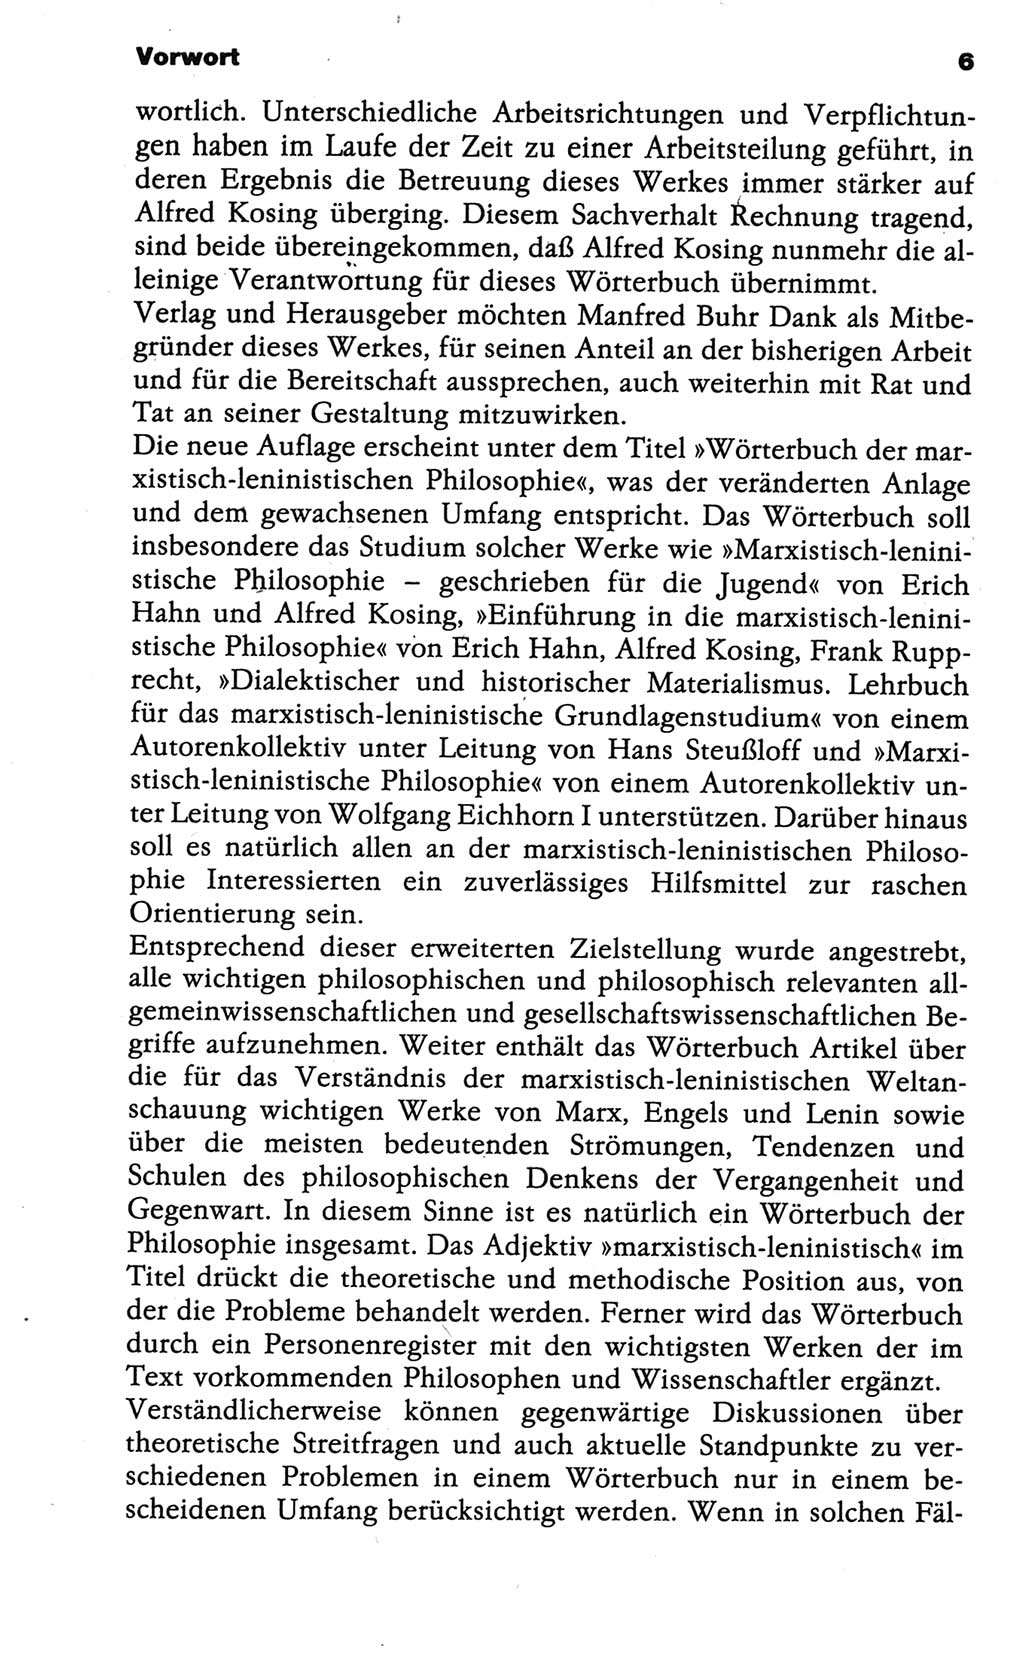 Wörterbuch der marxistisch-leninistischen Philosophie [Deutsche Demokratische Republik (DDR)] 1986, Seite 6 (Wb. ML Phil. DDR 1986, S. 6)